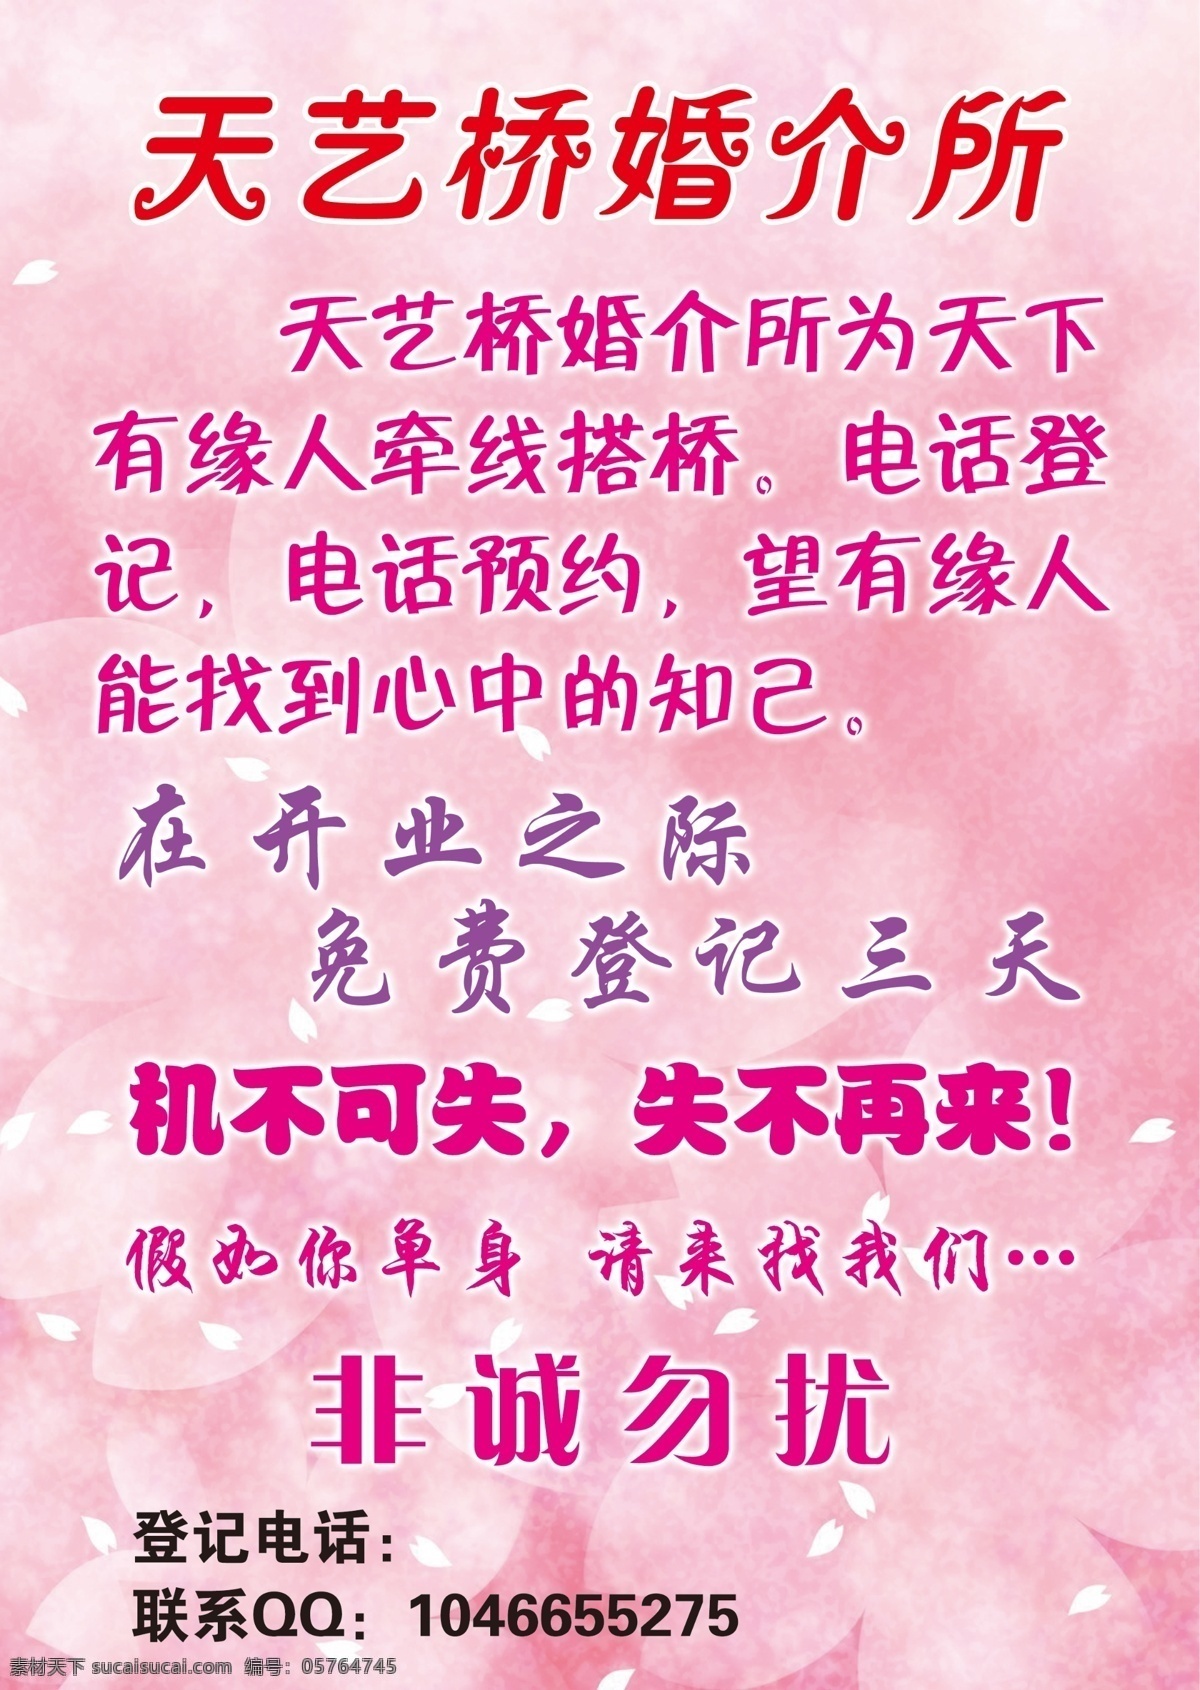 婚介宣传单 婚介 婚介所 花瓣 玫瑰 广告设计模板 源文件